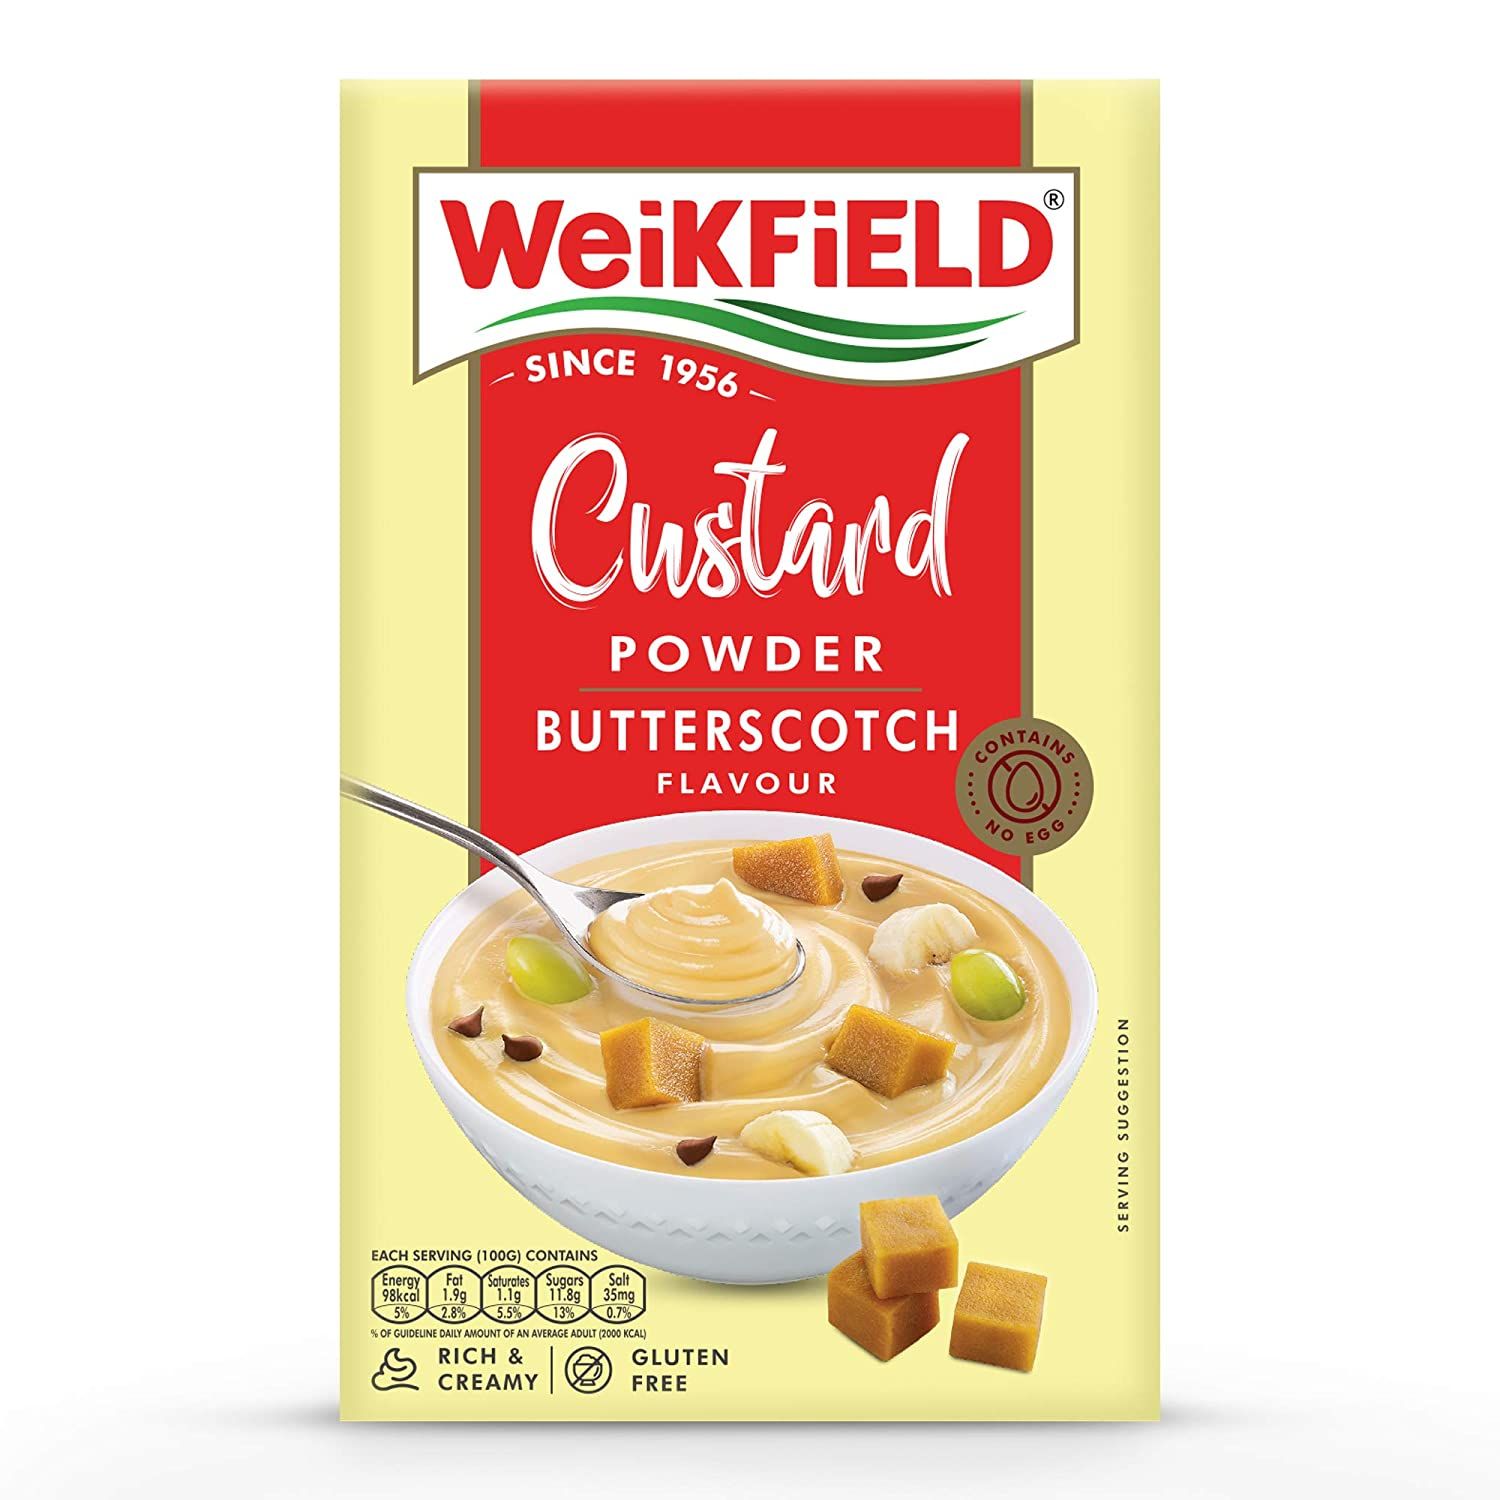 Weikfield Custard Powder Butterscotch Image